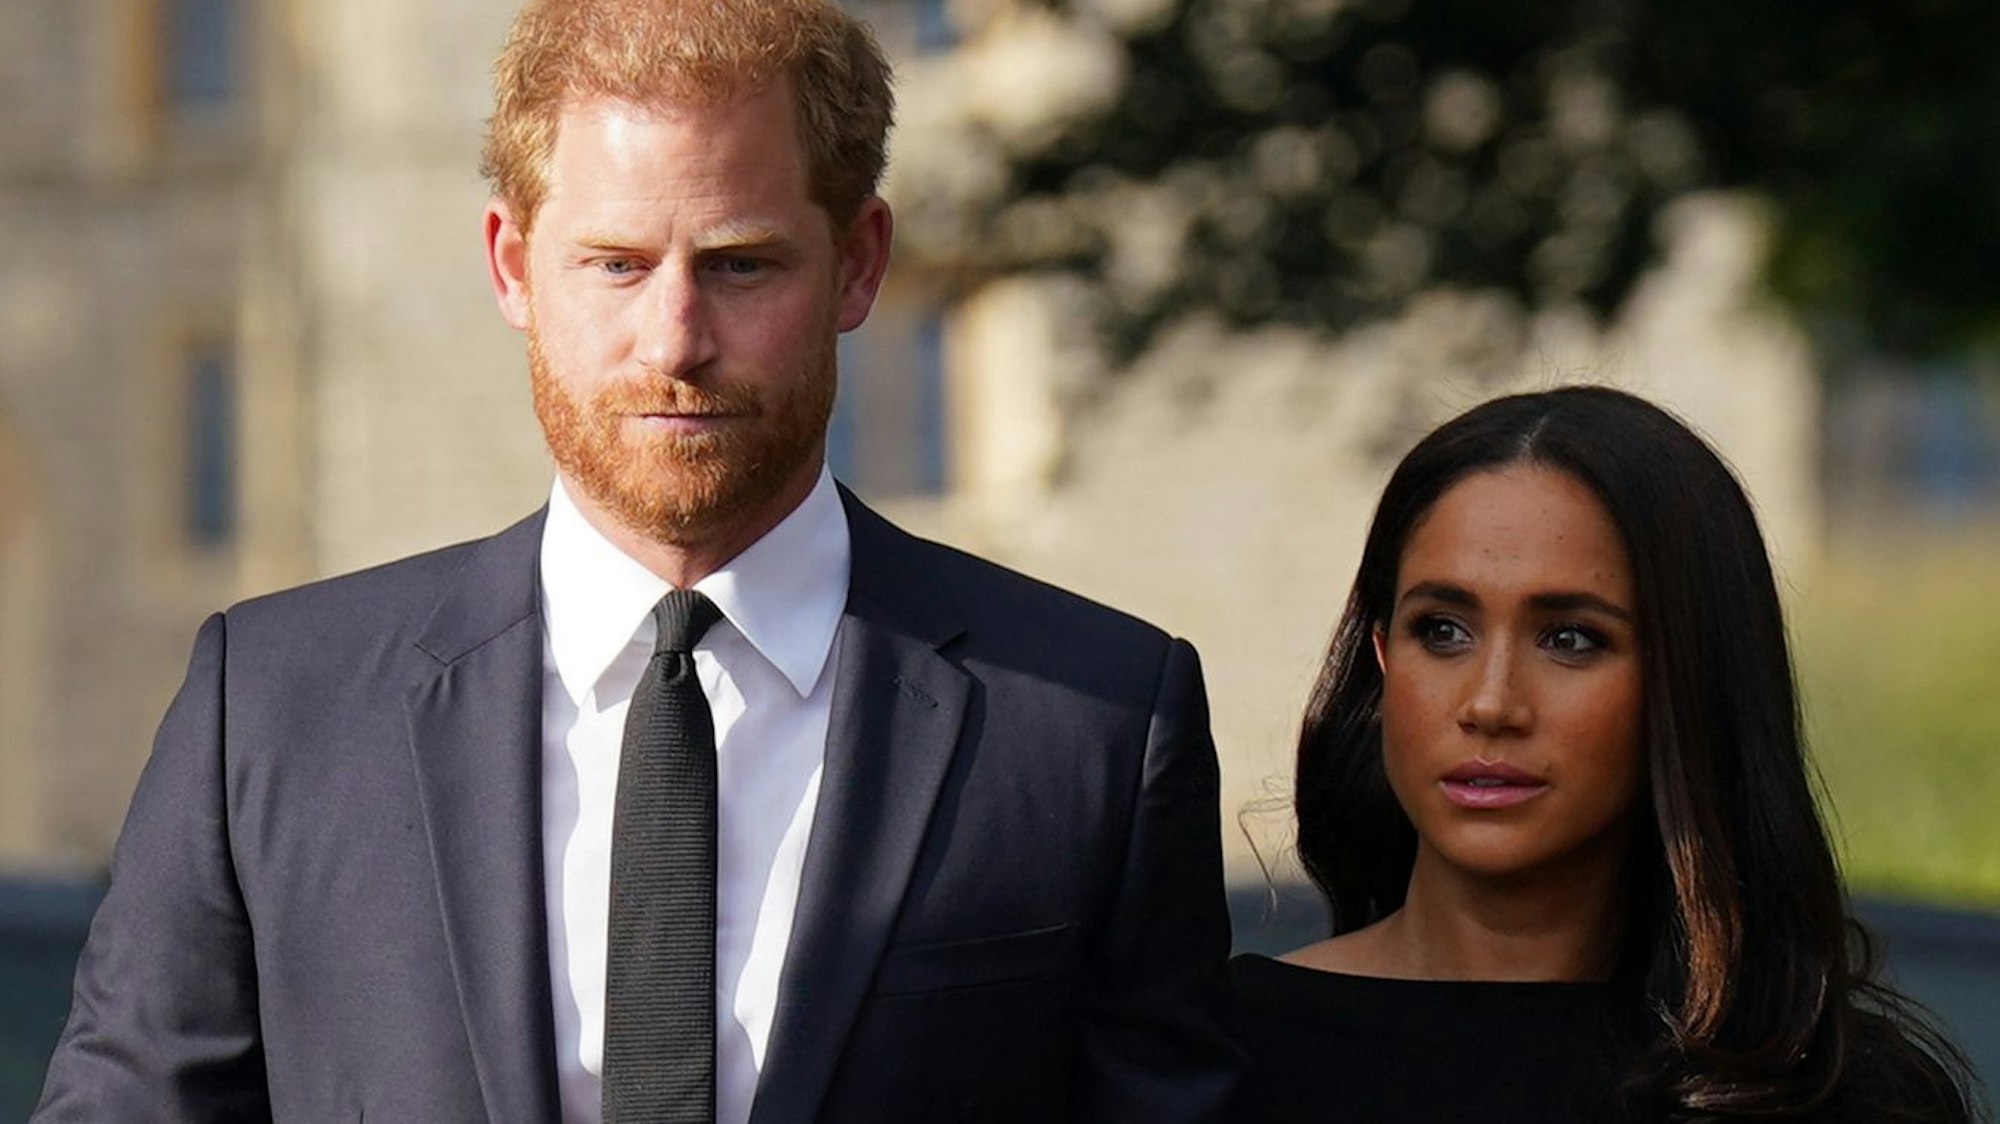 Der britische Prinz Harry und seine Frau Meghan treffen nach dem Tod der britischen Königin Elizabeth II. am 08. September 2022 auf Schloss Windsor in Trauerkleidung mit der Öffentlichkeit zusammen.